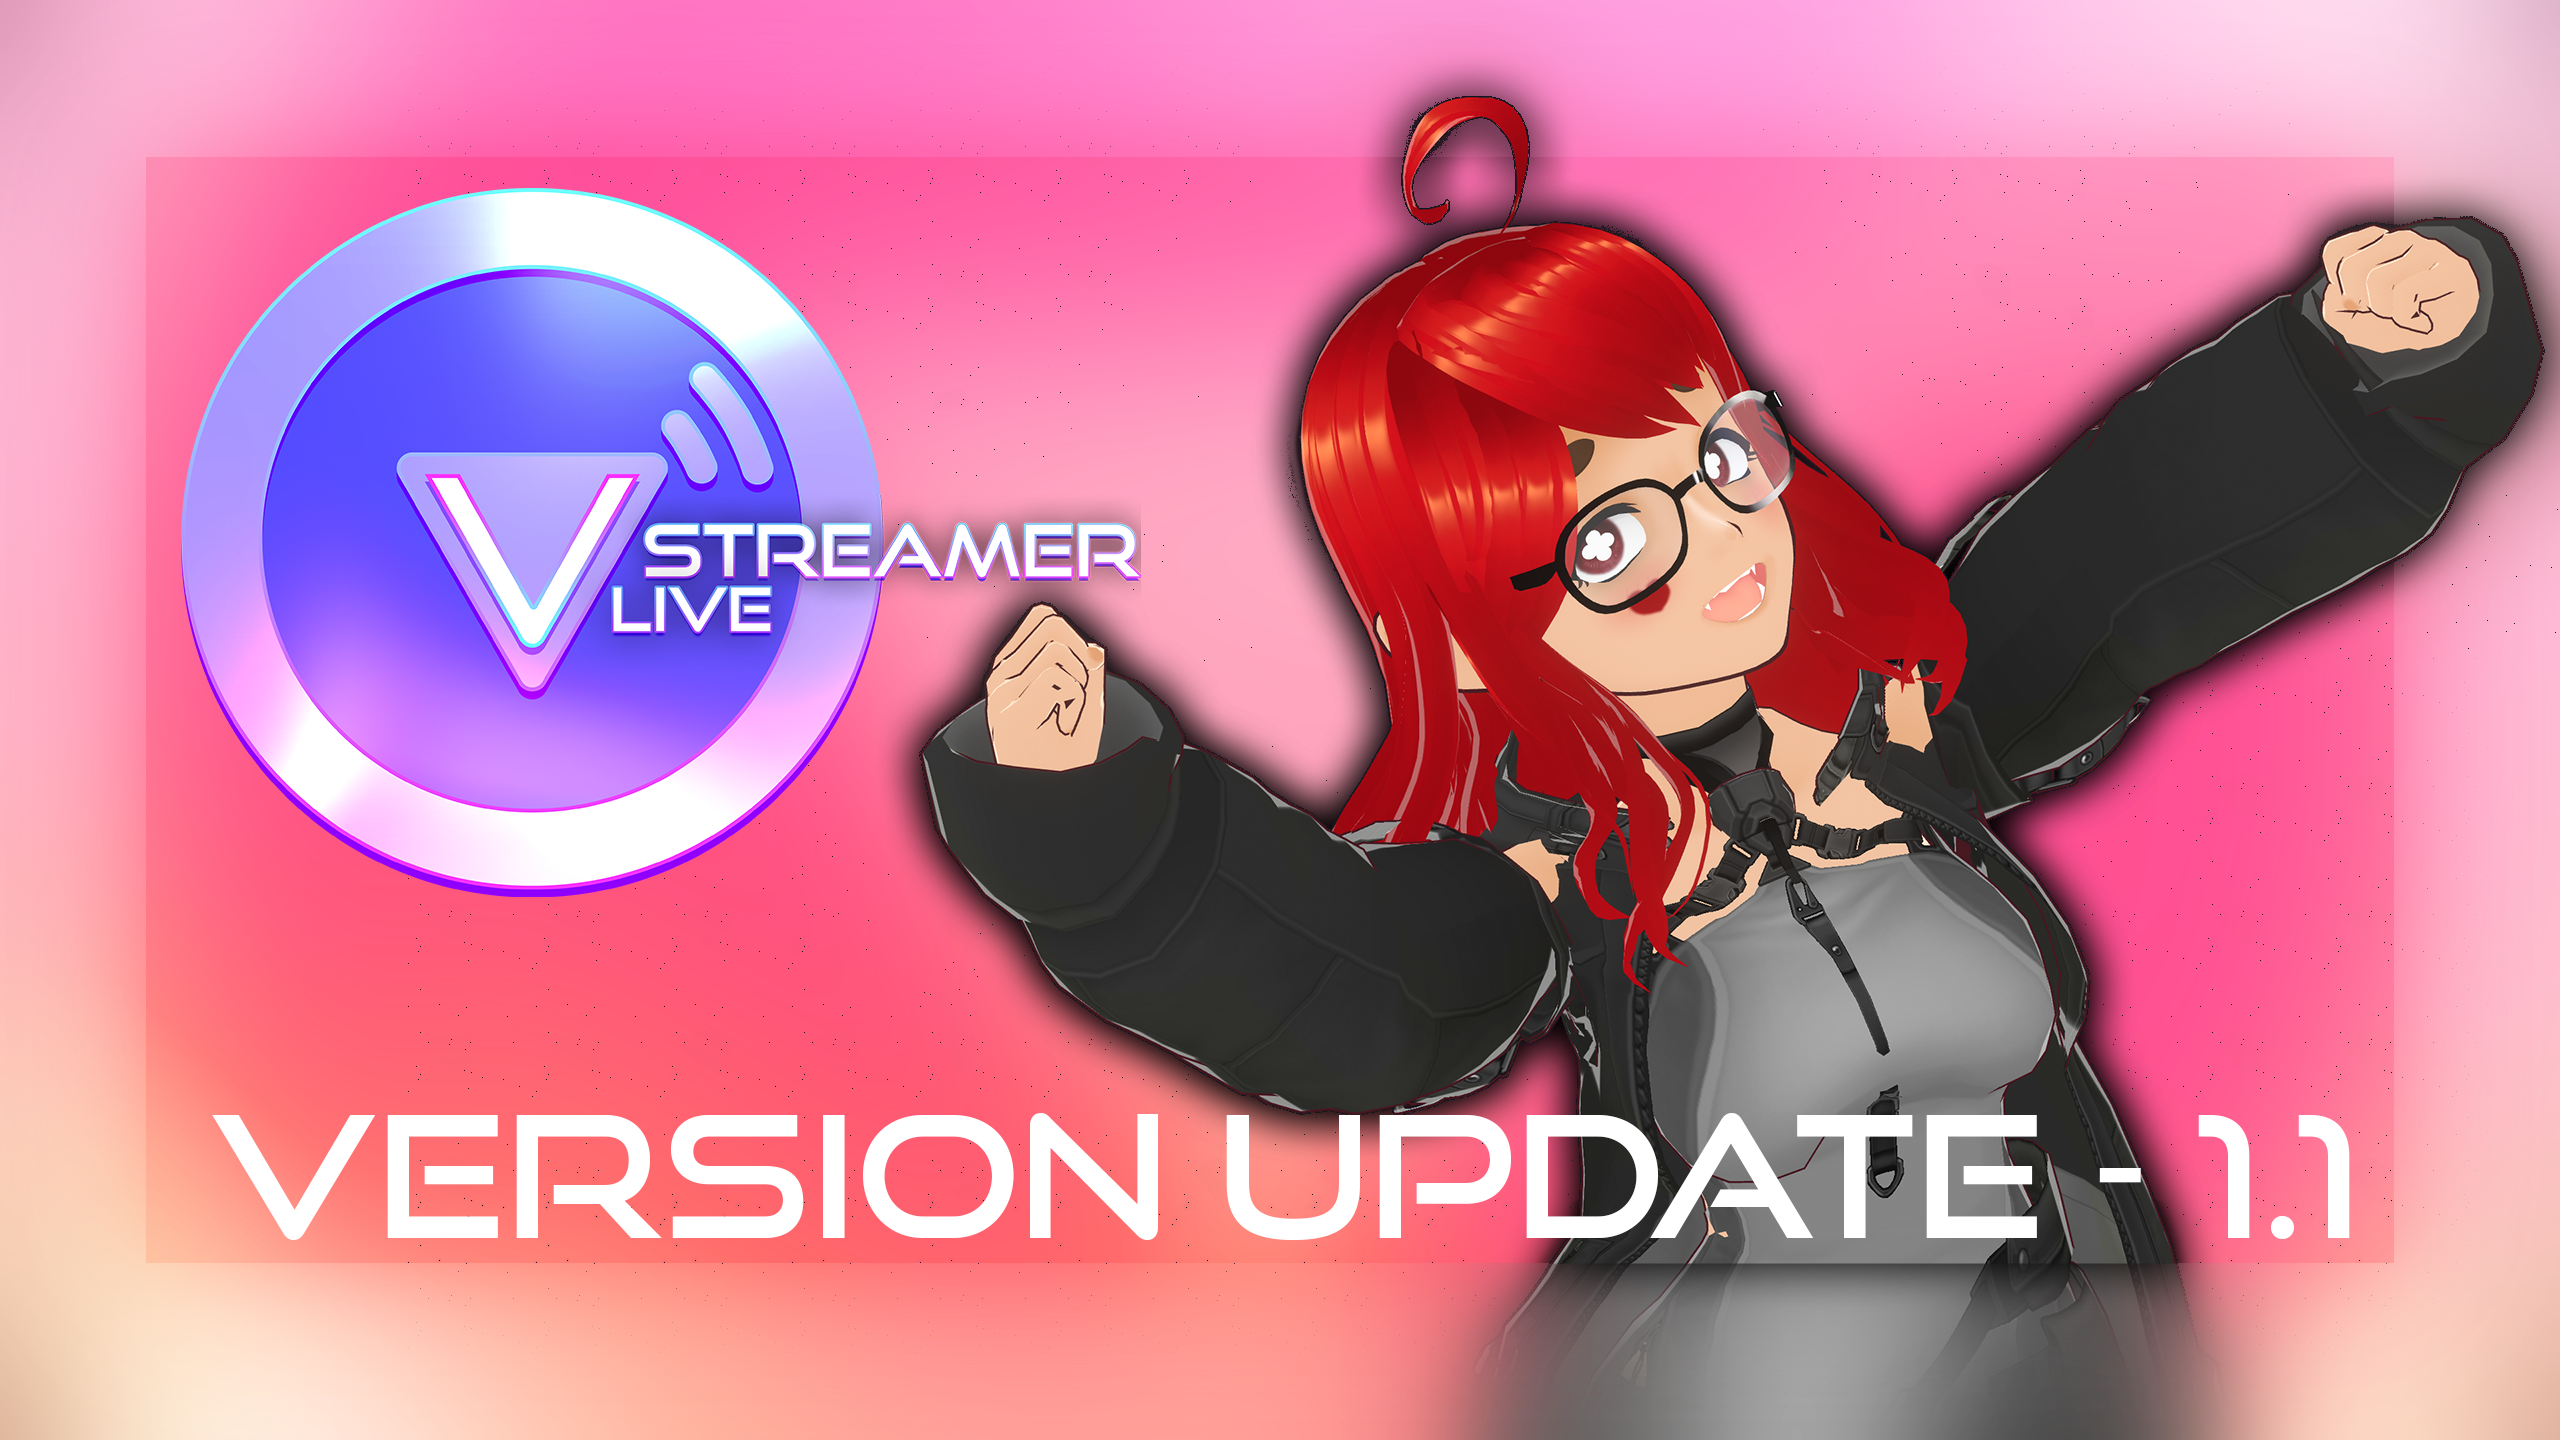 VStreamer Live v1.1 Released!